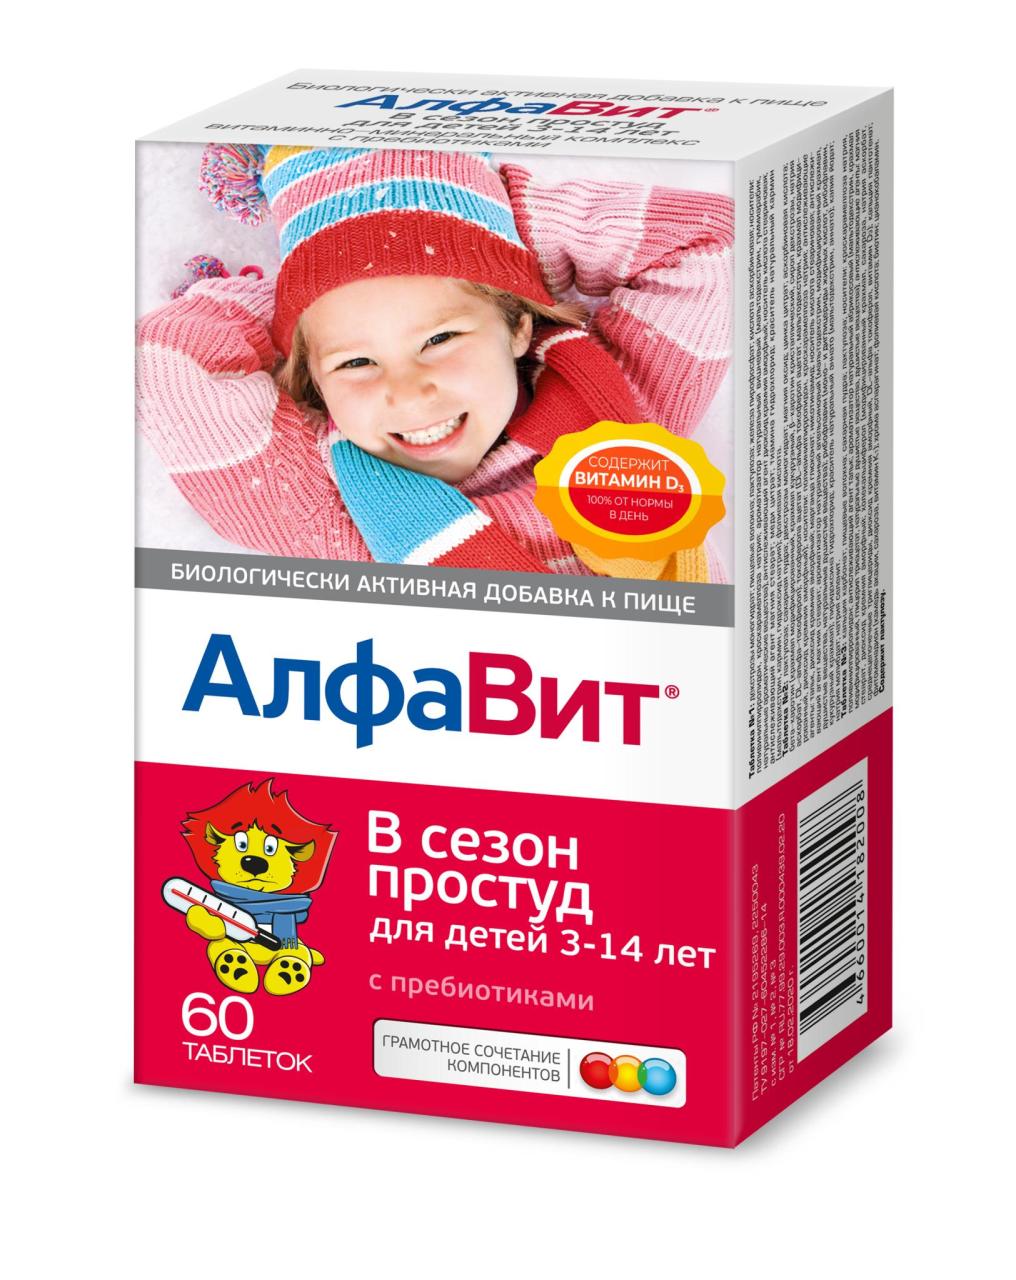 БАД к пище «Алфавит® В сезон простуд для детей»